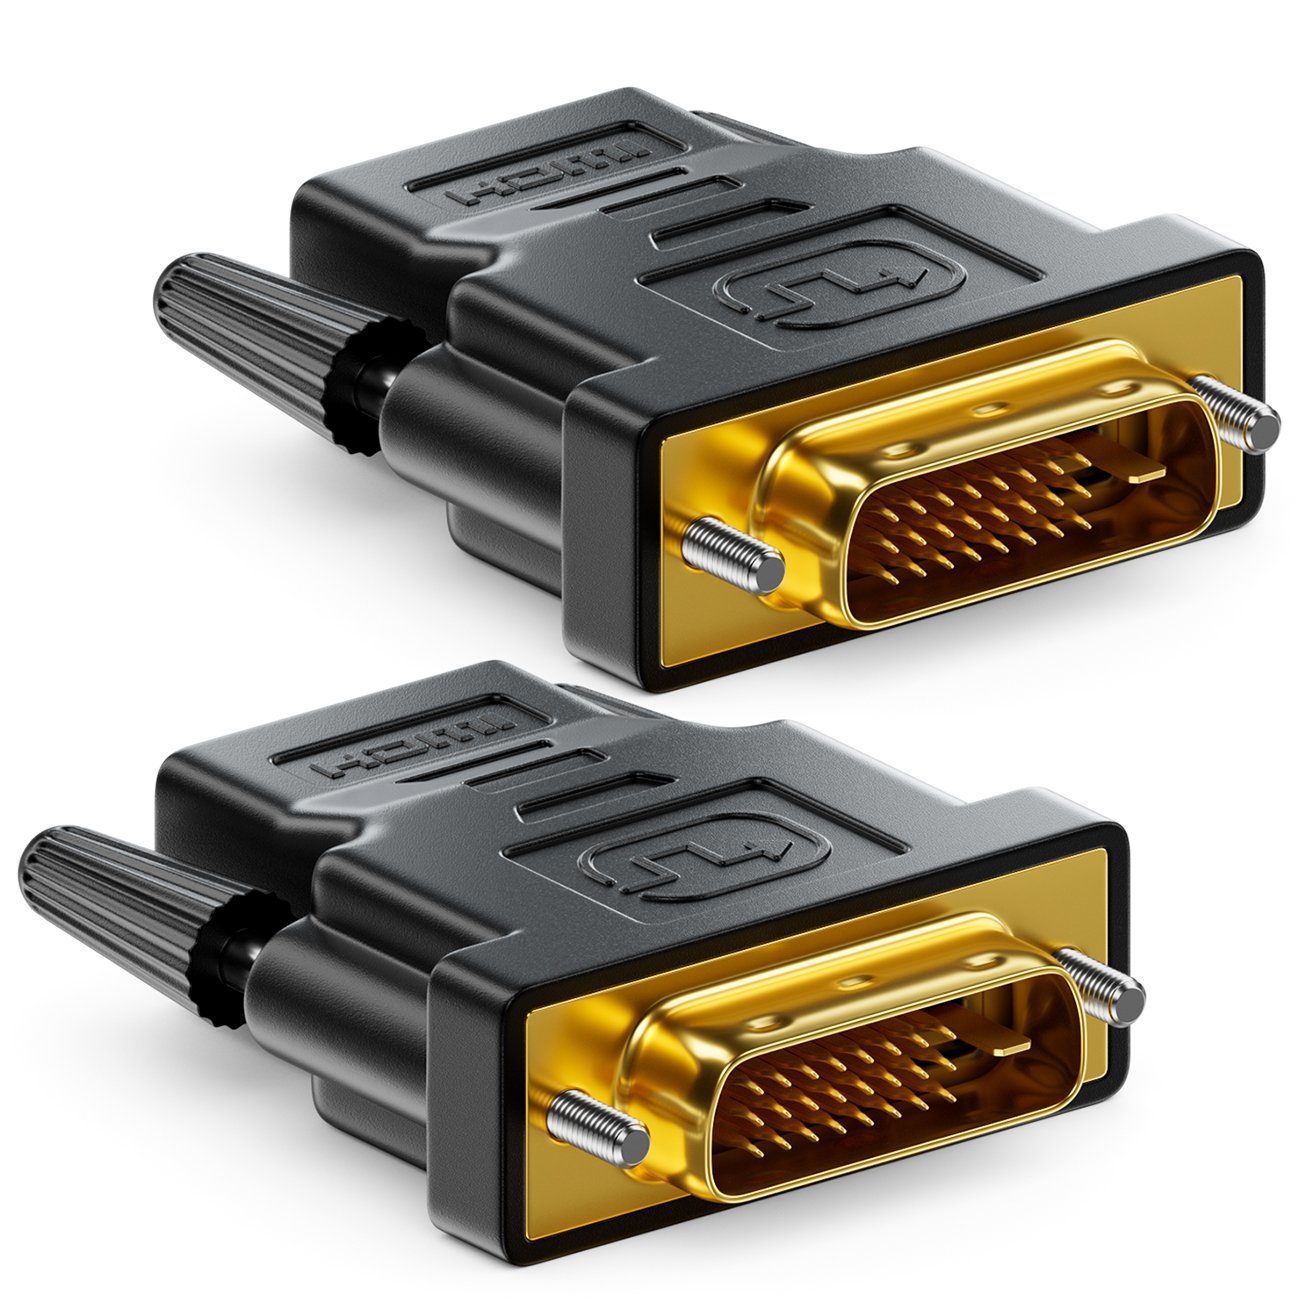 deleyCON »deleyCON 2x HDMI zu DVI Adapter HDMI Buchse zu DVI Stecker 24+1  1920x1200 1080p« Video-Kabel online kaufen | OTTO